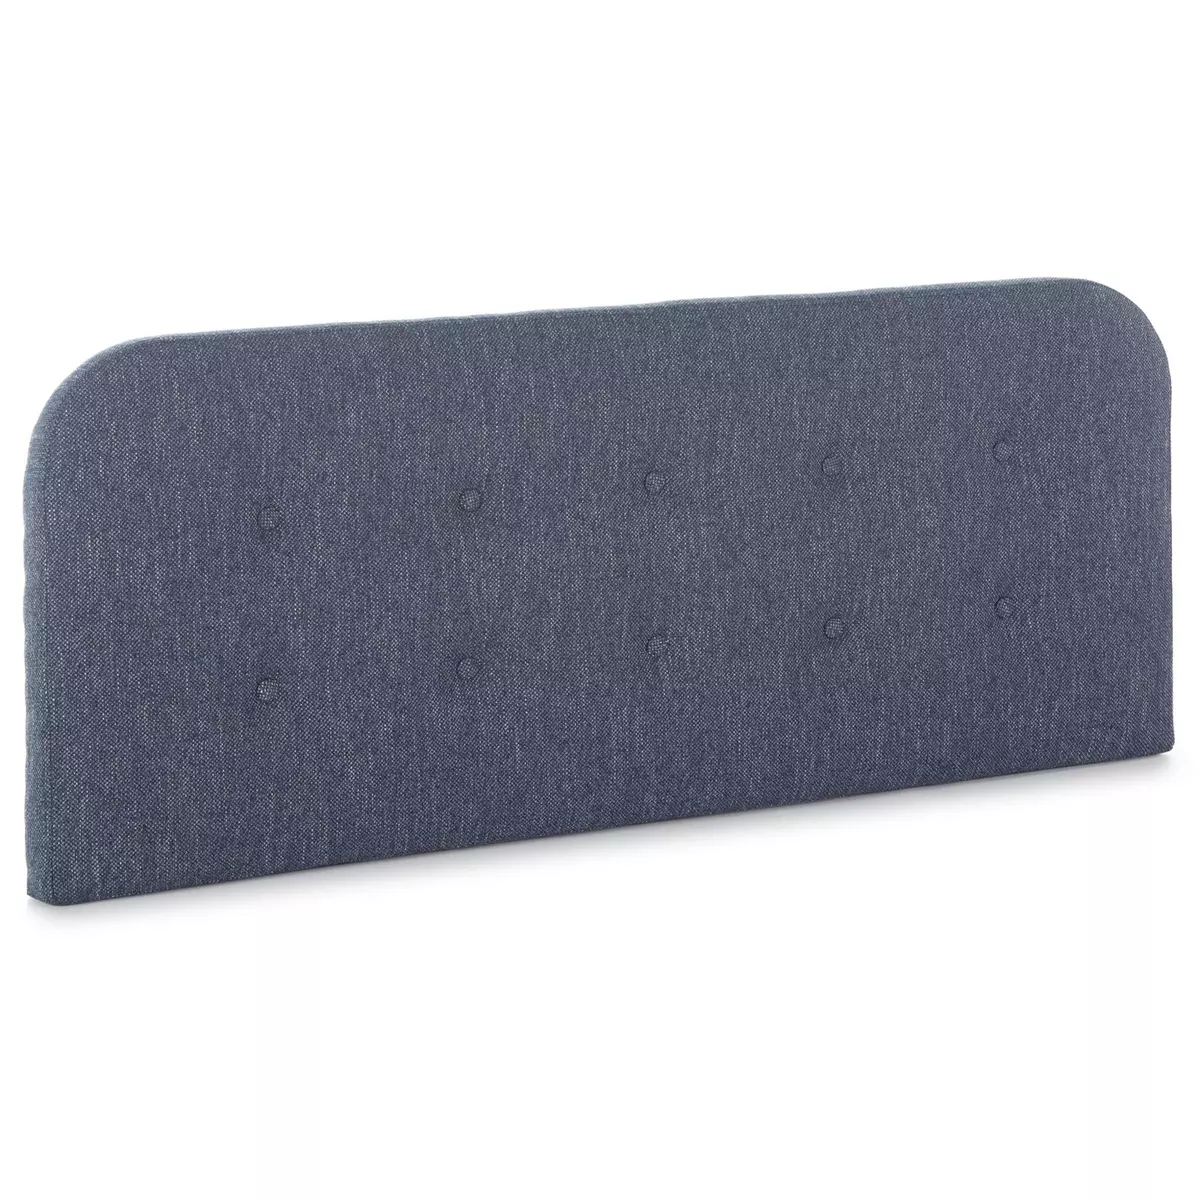 MARCKONFORT Tête de lit tapissée Saona 140x60 cm Couleur Bleu, 8 cm d'épaisseur